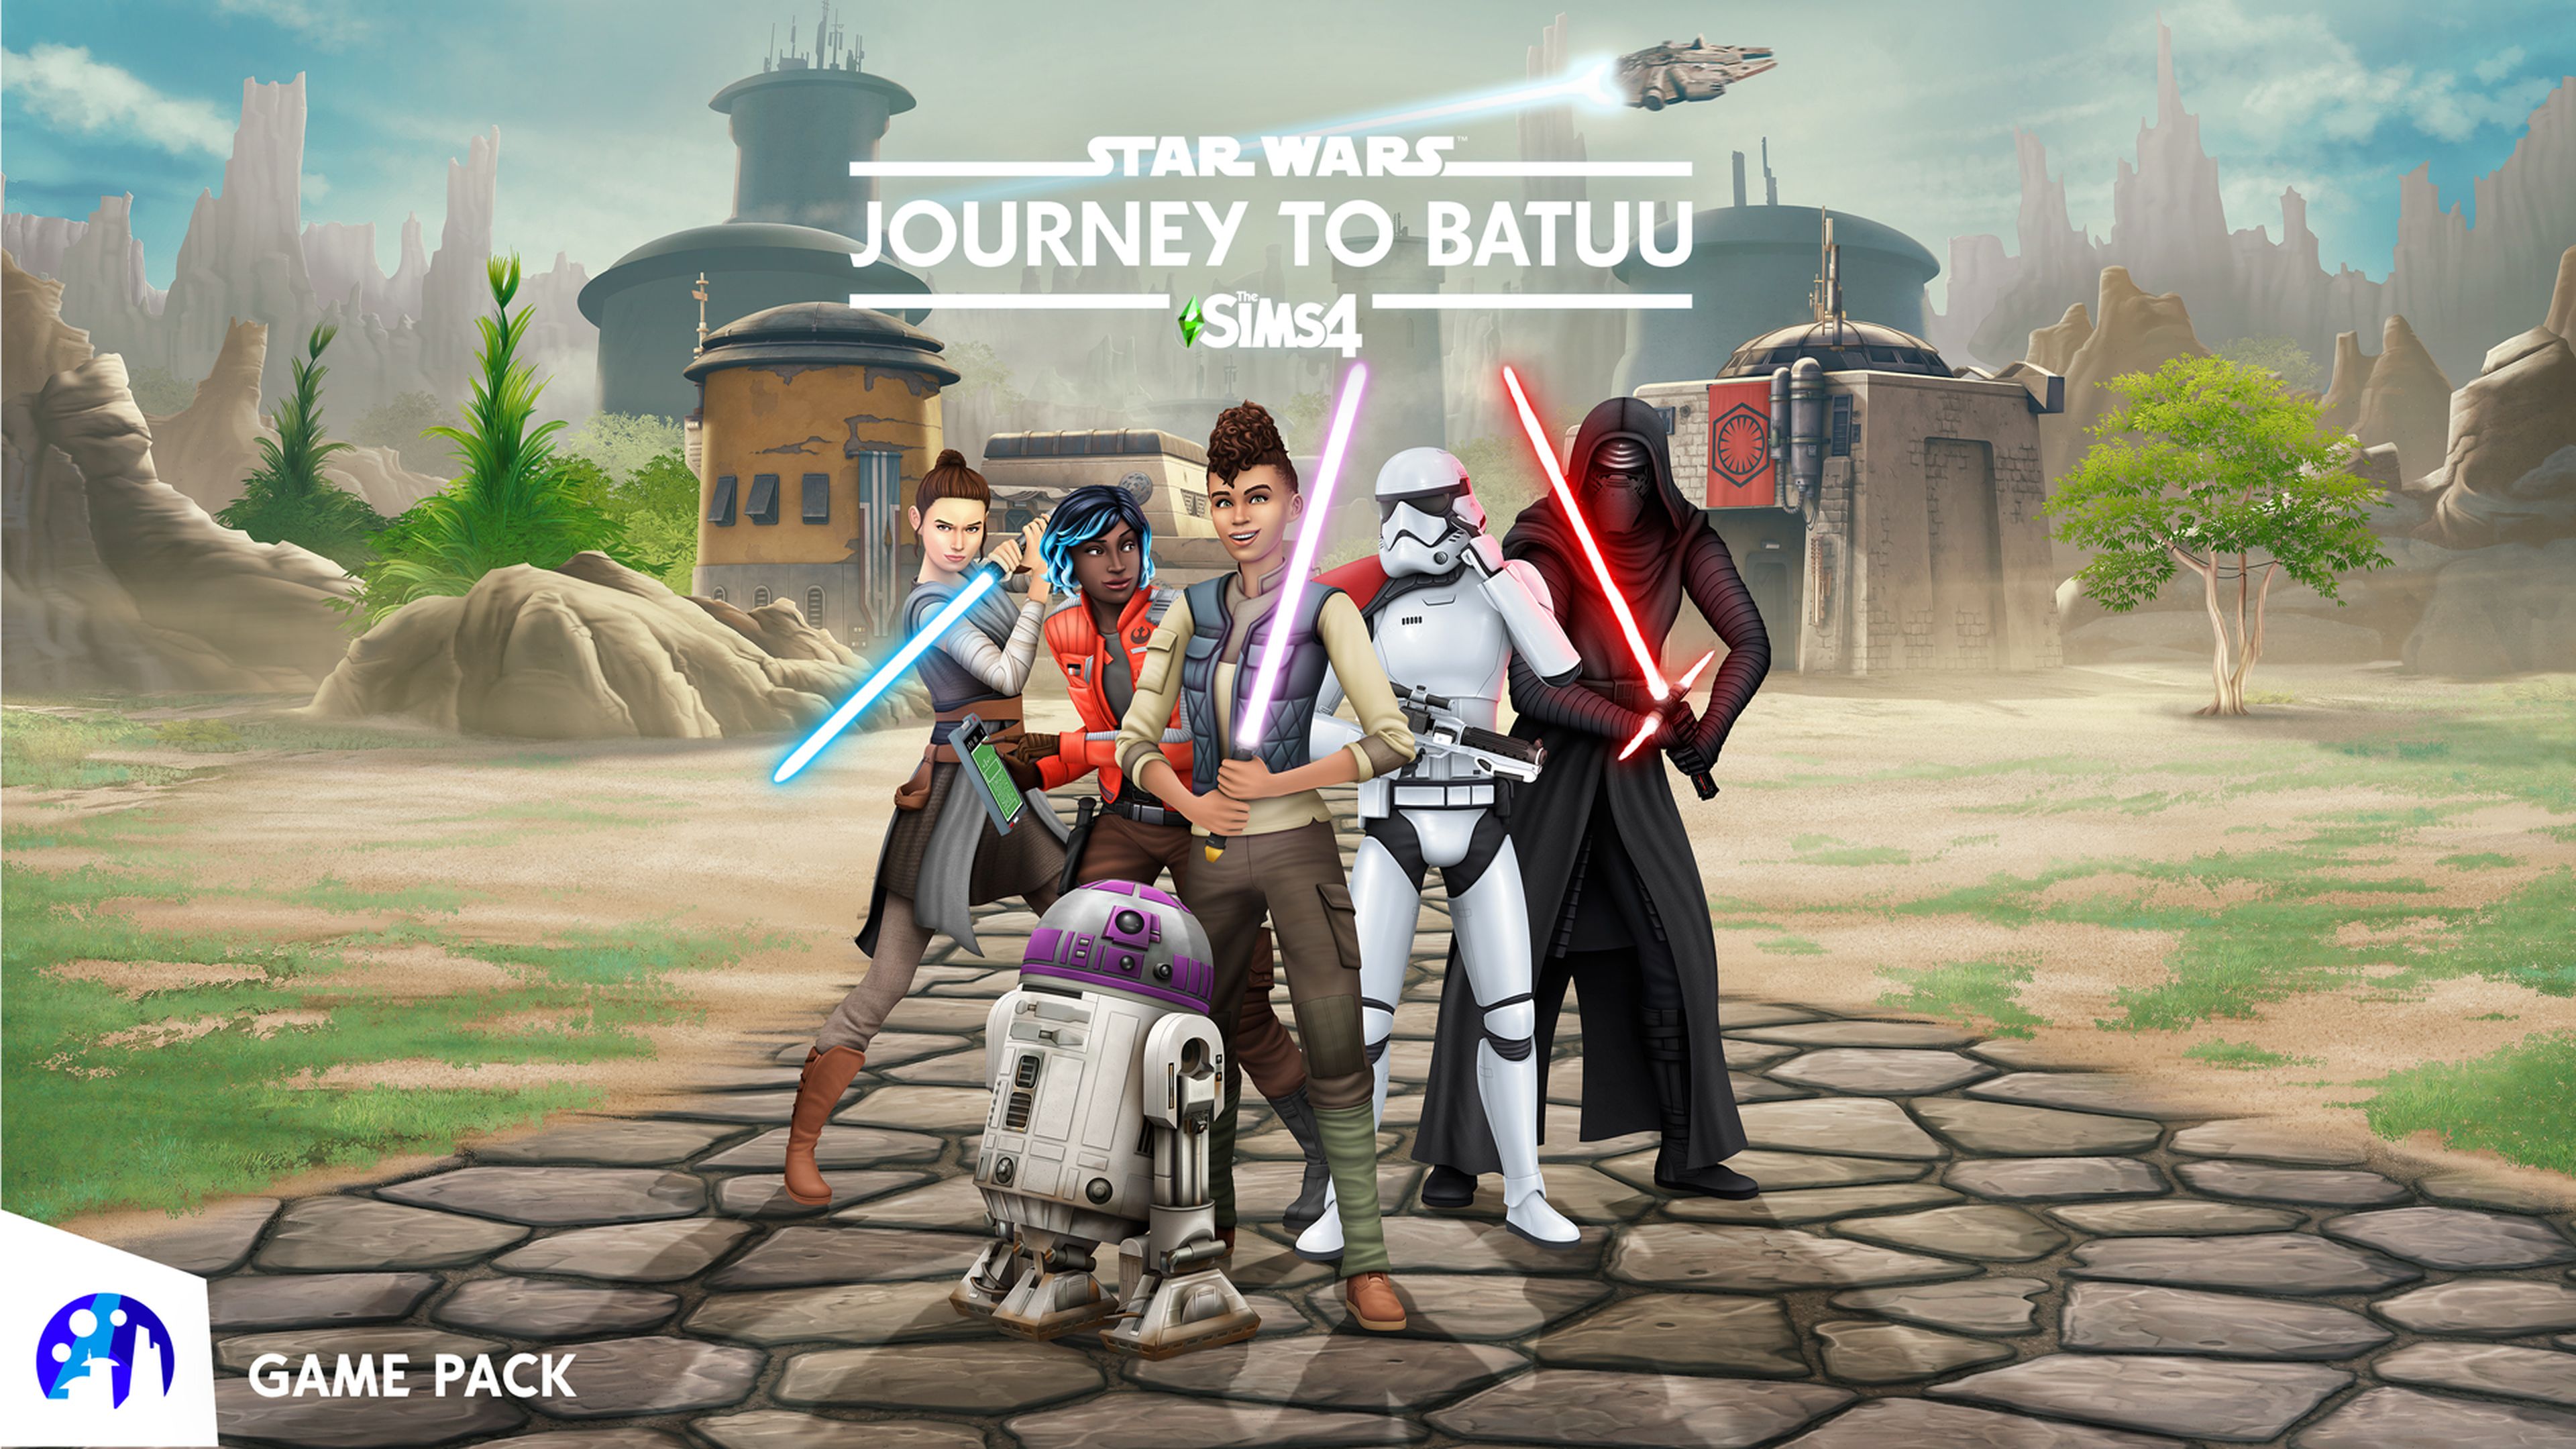 Los Sims 4 Star Wars: Viaje a Batuu